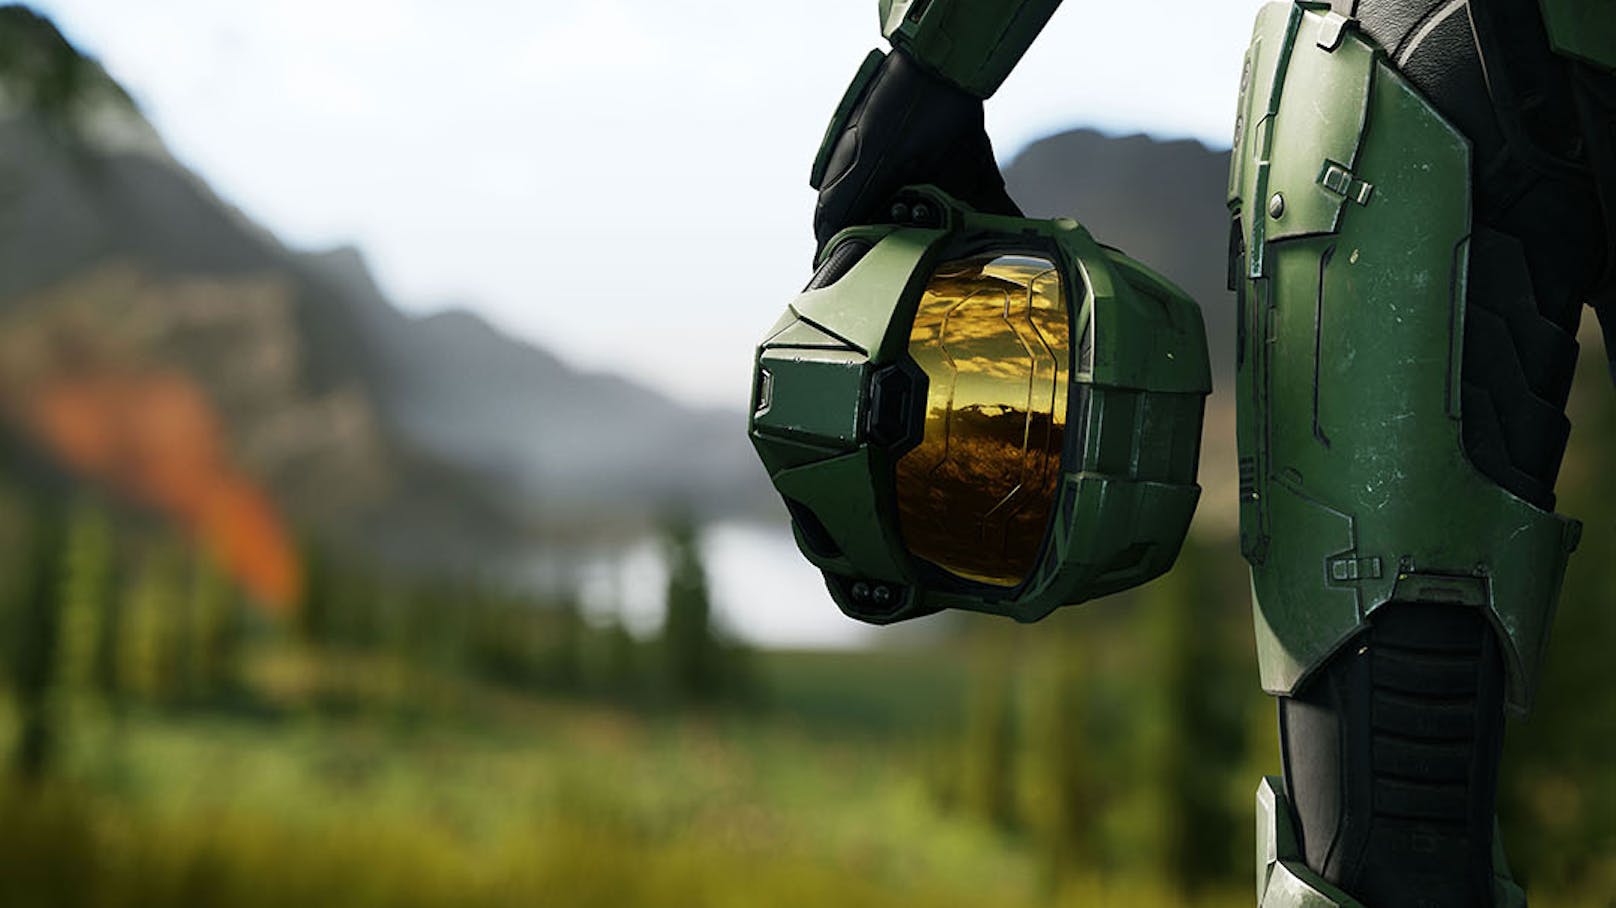 Zu den Highlights gehört auch die Premiere von Kampagnen-Gameplay des sehnsüchtig erwarteten Halo Infinite. 